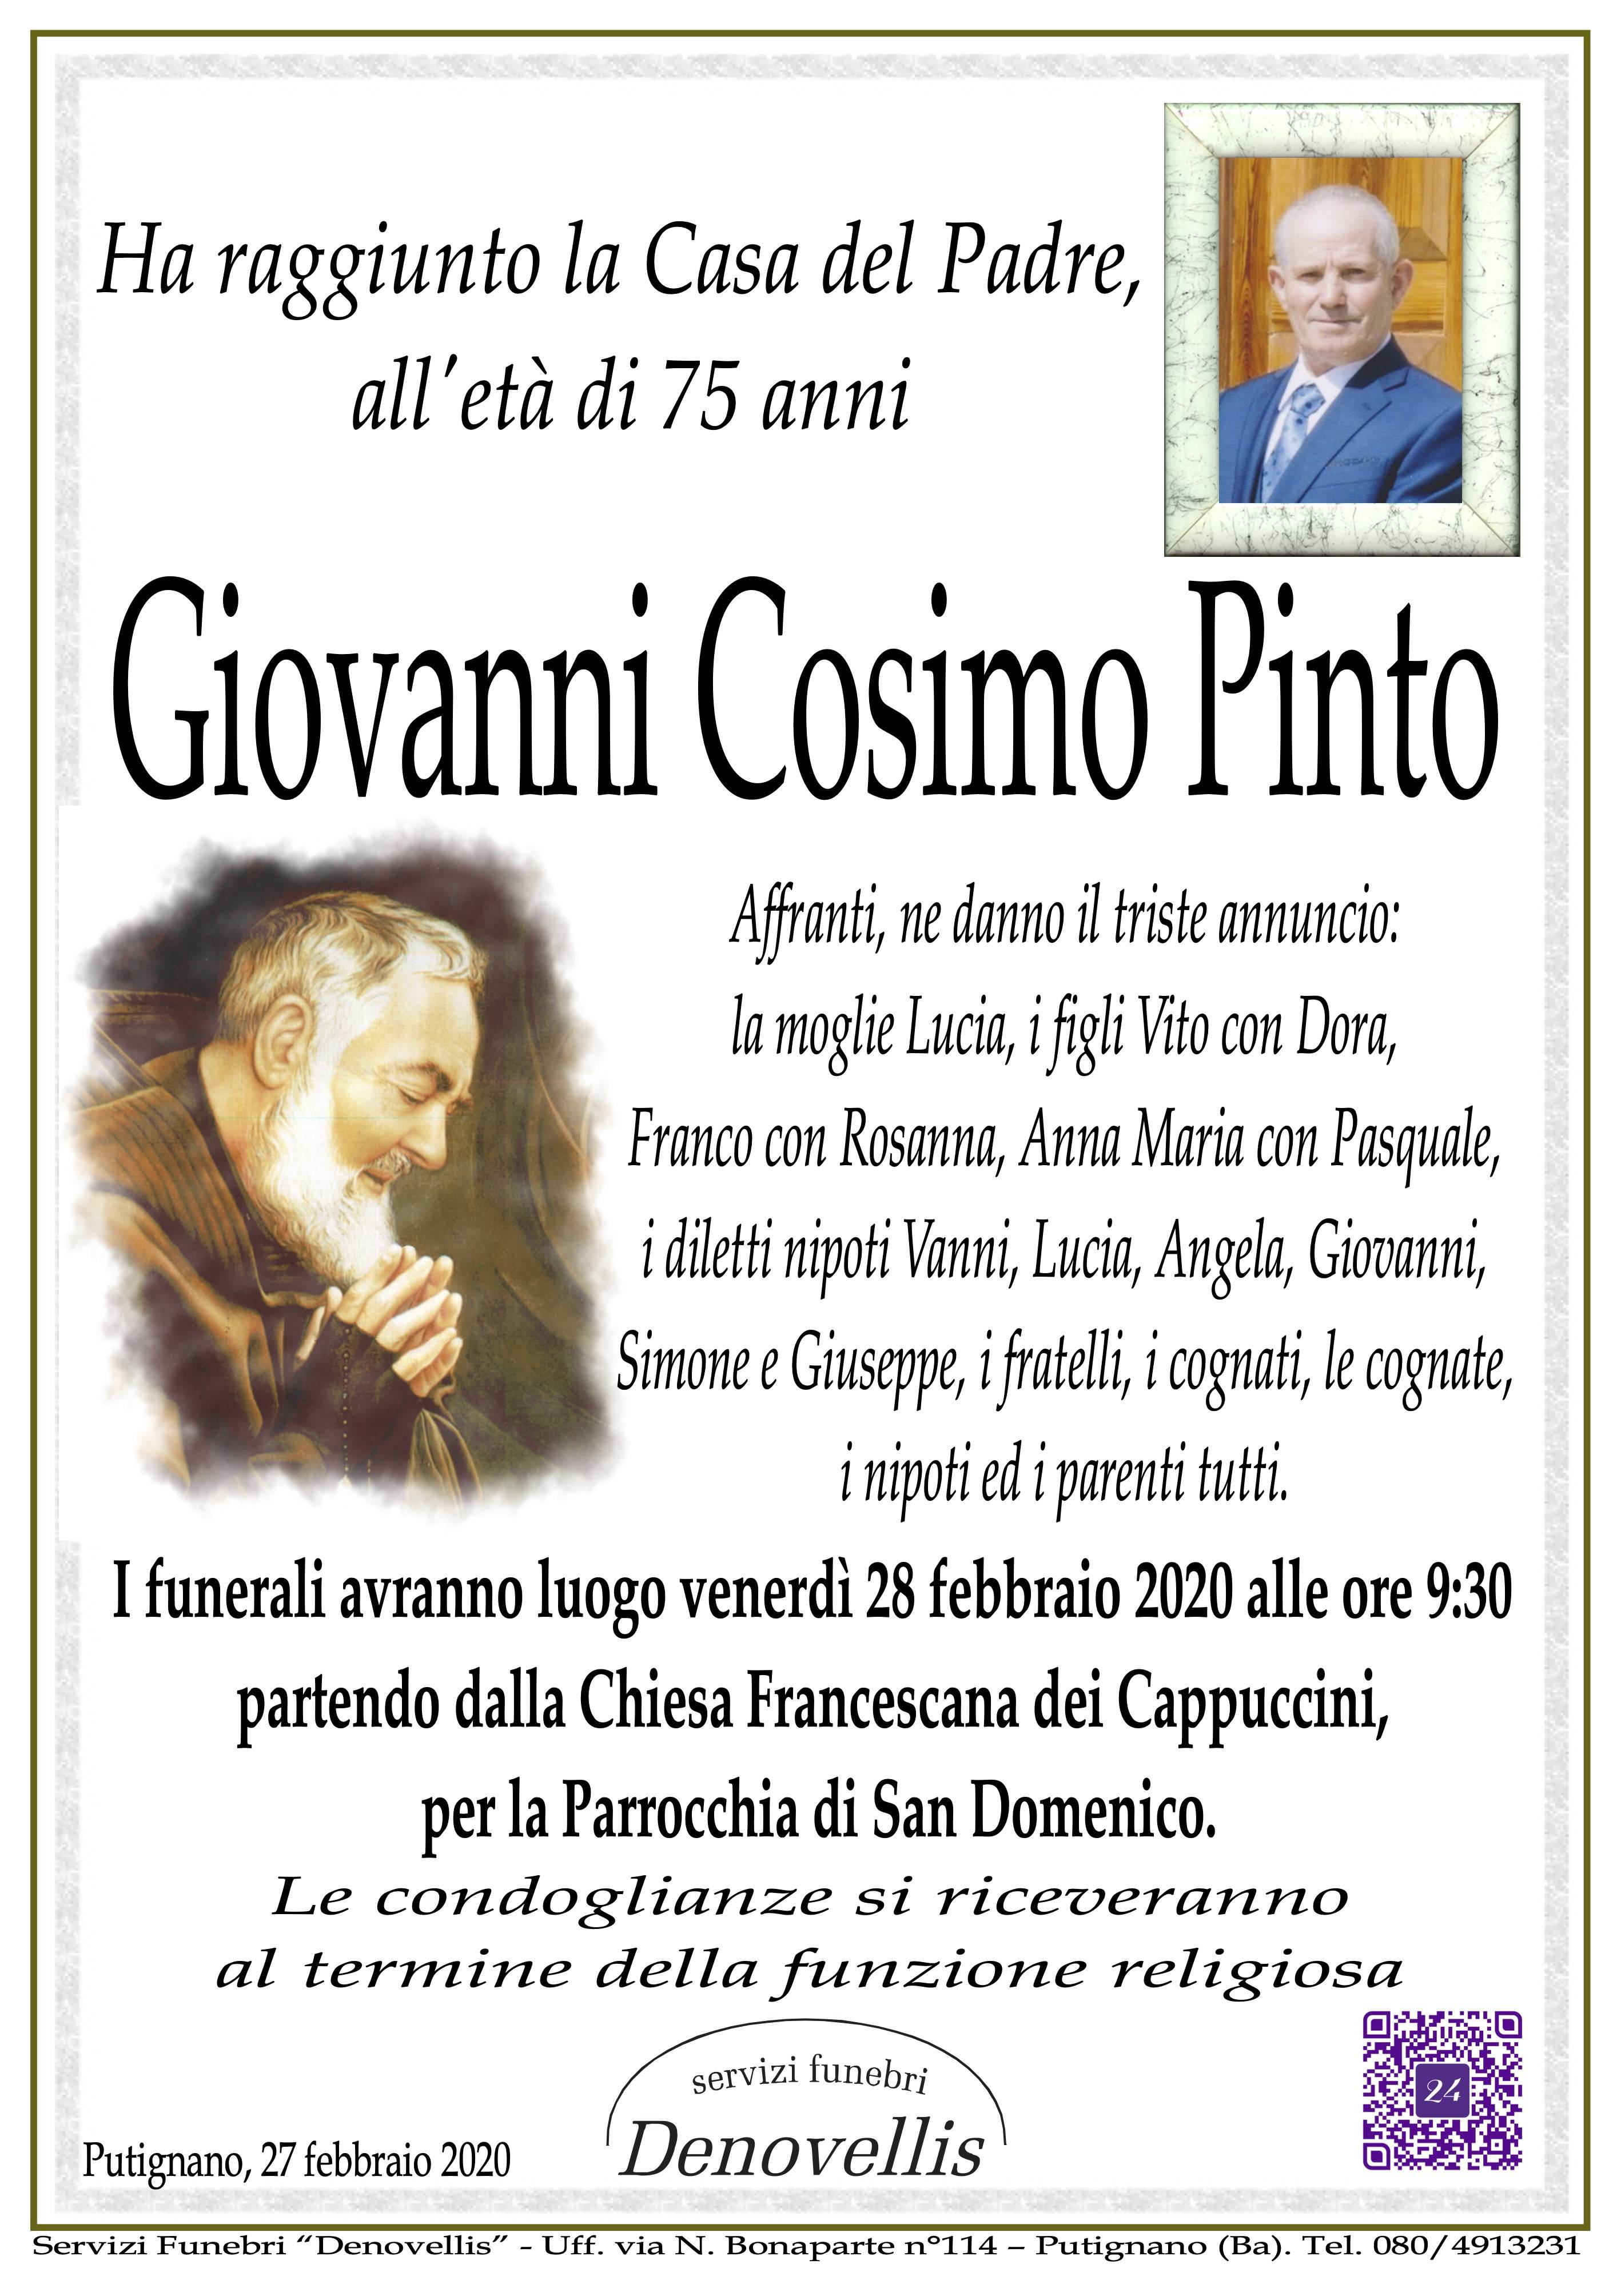 Giovanni Cosimo Pinto